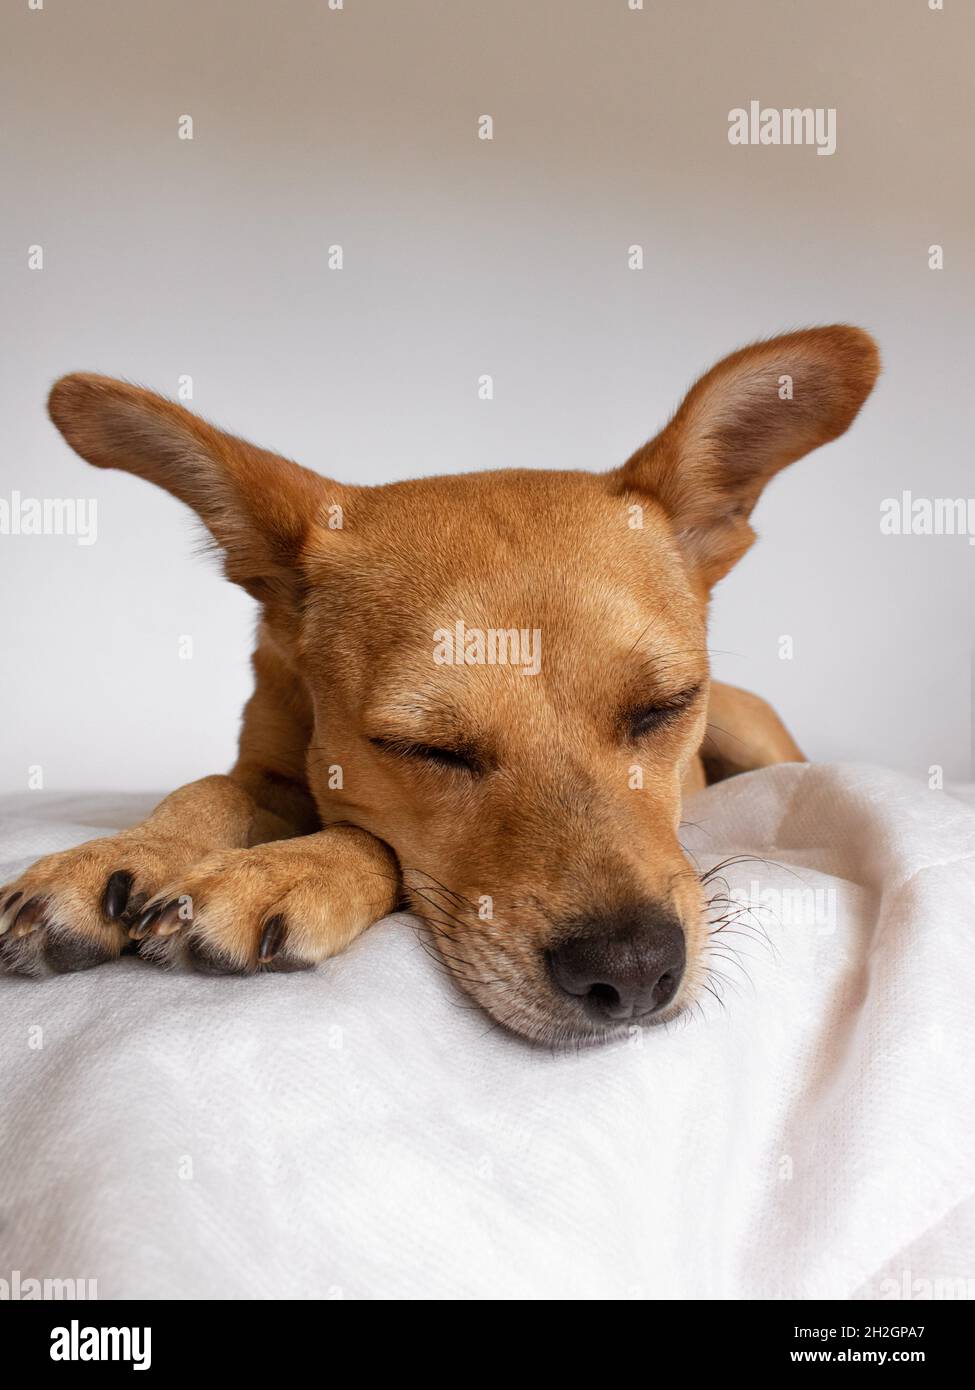 Un adorable chien de race mixte avec des oreilles dormant confortablement sur une couverture blanche douce.Gros plan sur le visage du chien devant l'appareil photo avec un espace pour le texte Banque D'Images